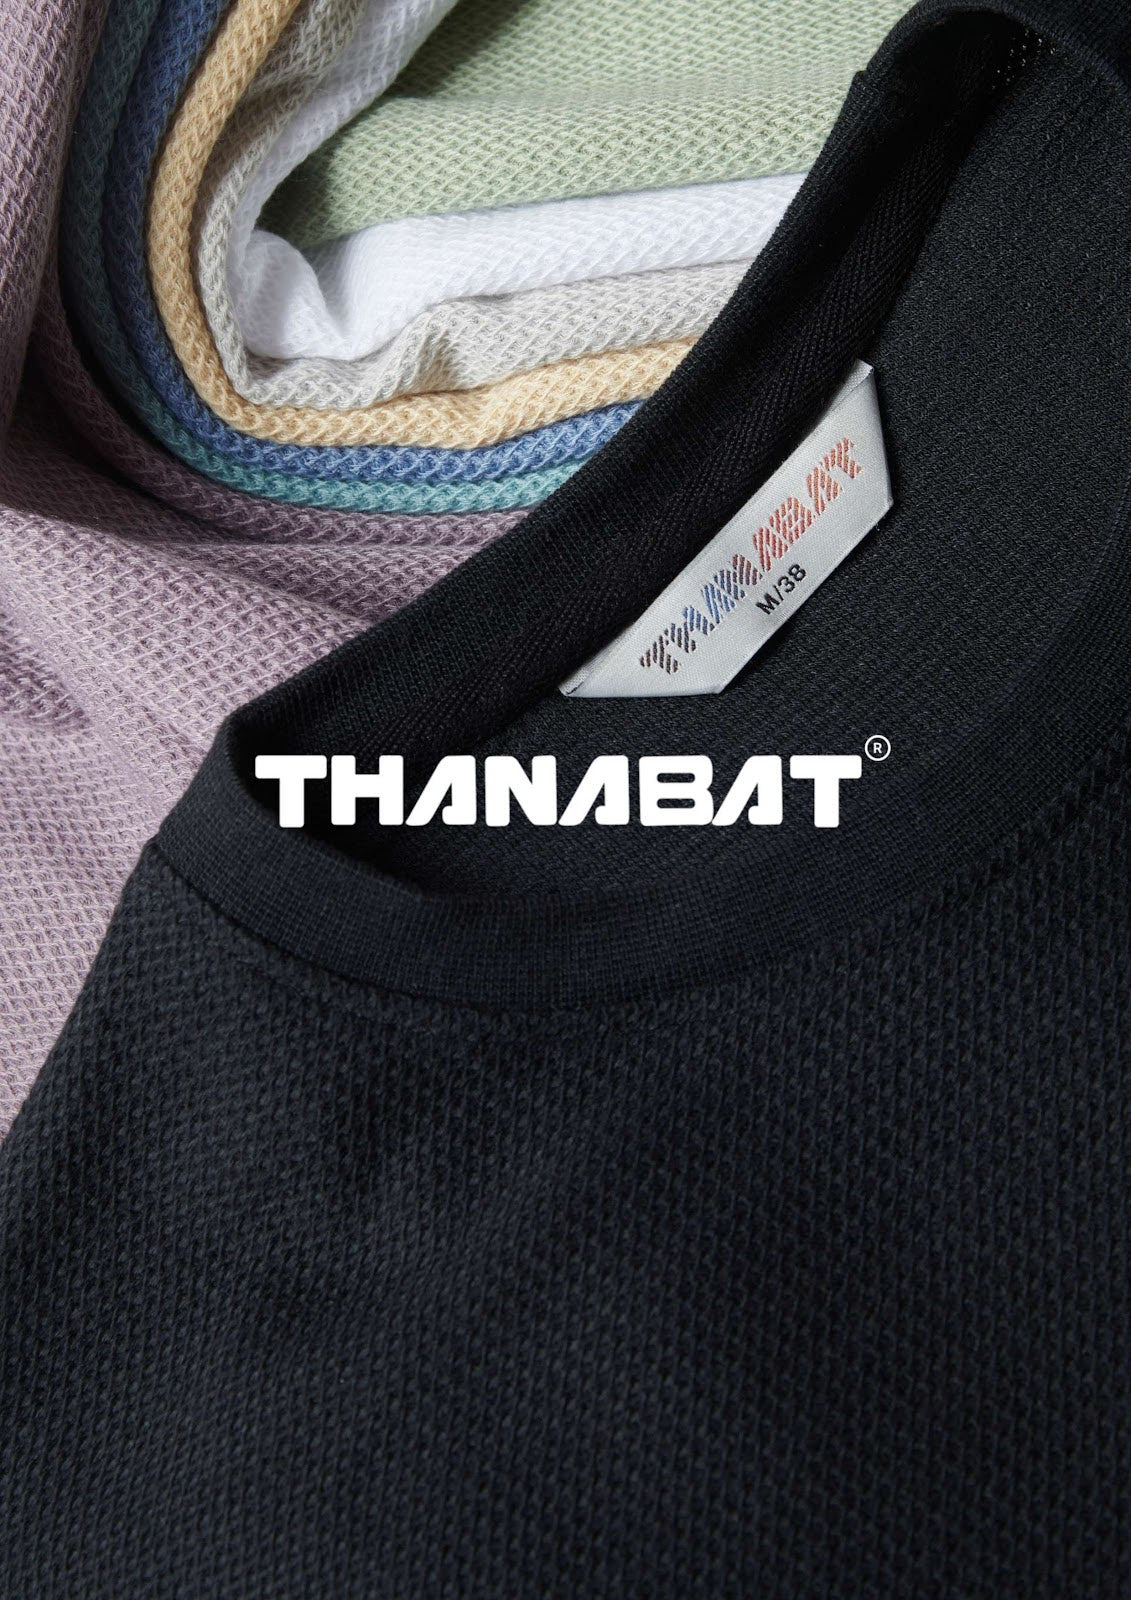 Iho E 59 Thanabat Knit Mens Tshirts